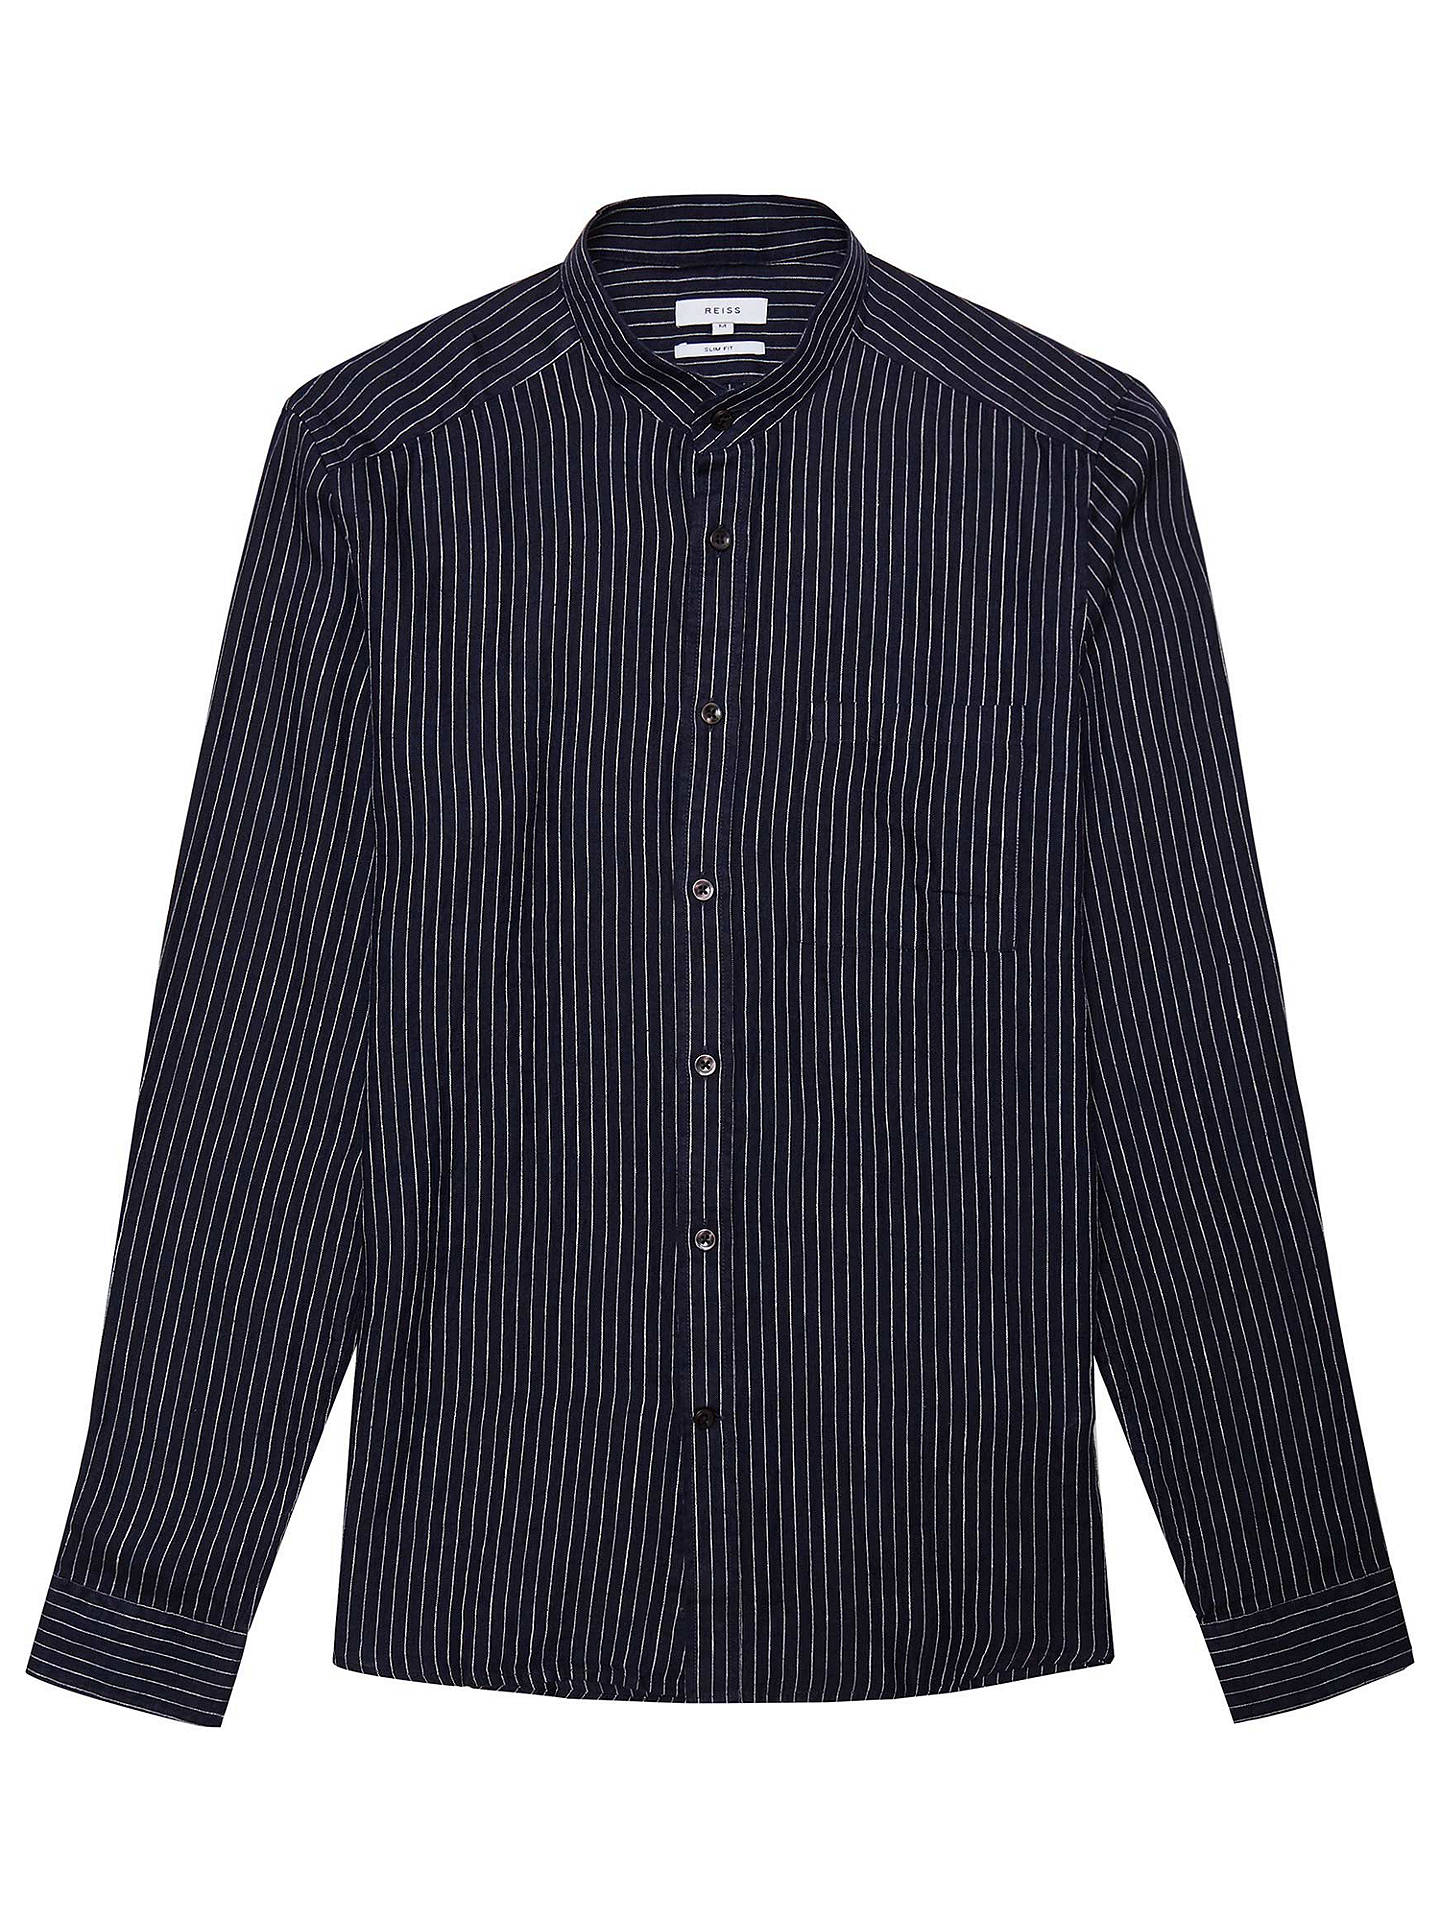 Reiss Tokyo Linen Shirt, Navy at John Lewis & Partners